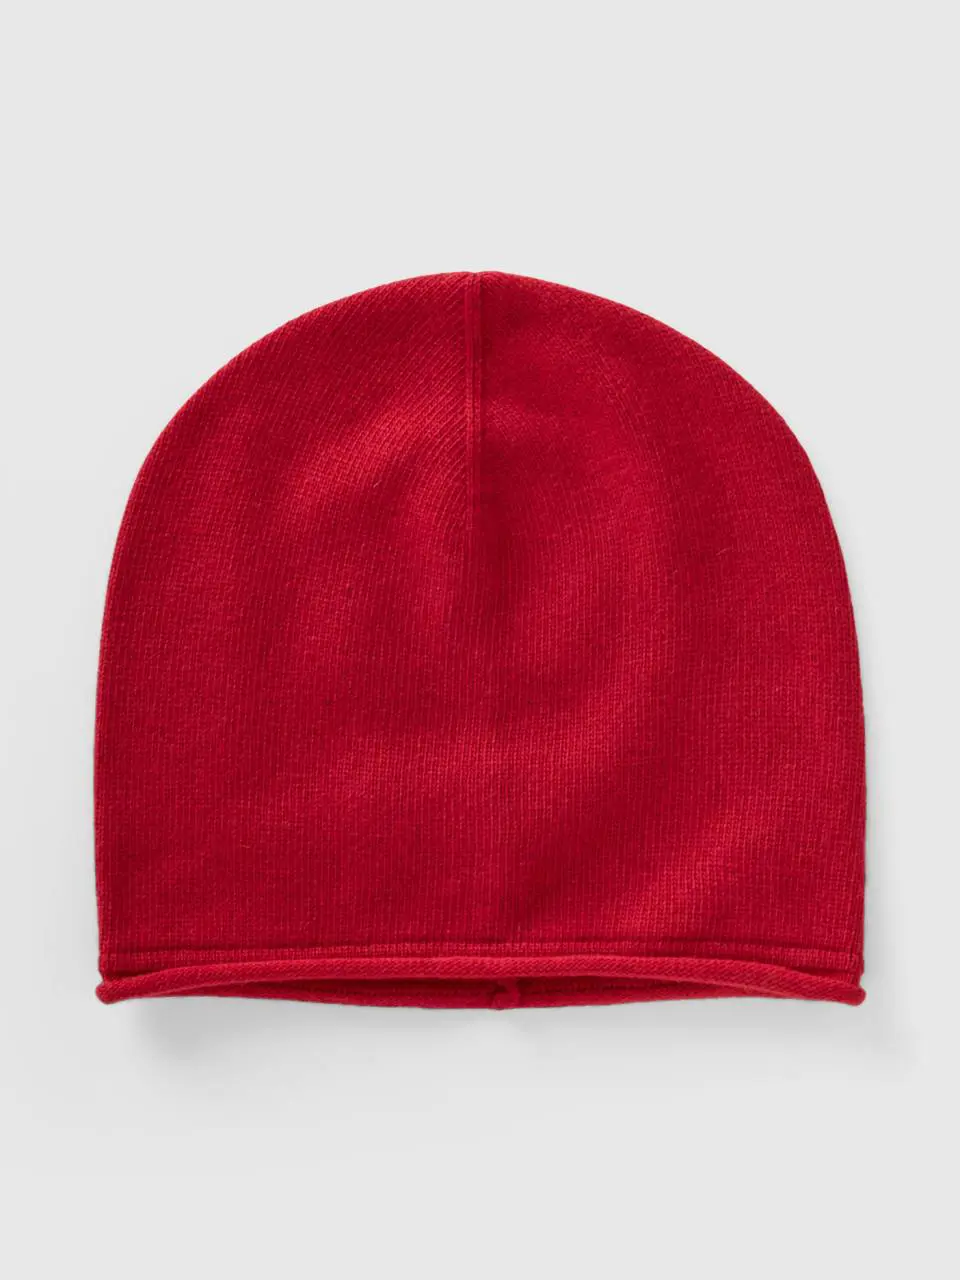 Benetton brick red cashmere blend hat. 1